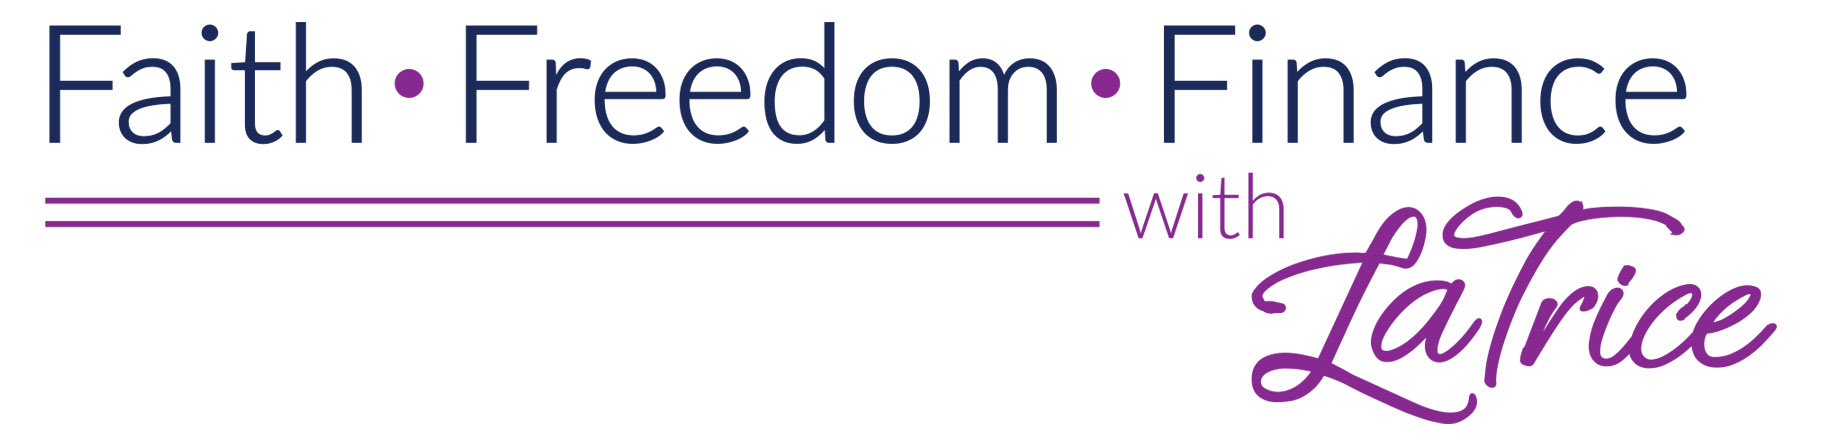 Faith, Freedom and Finance Logo